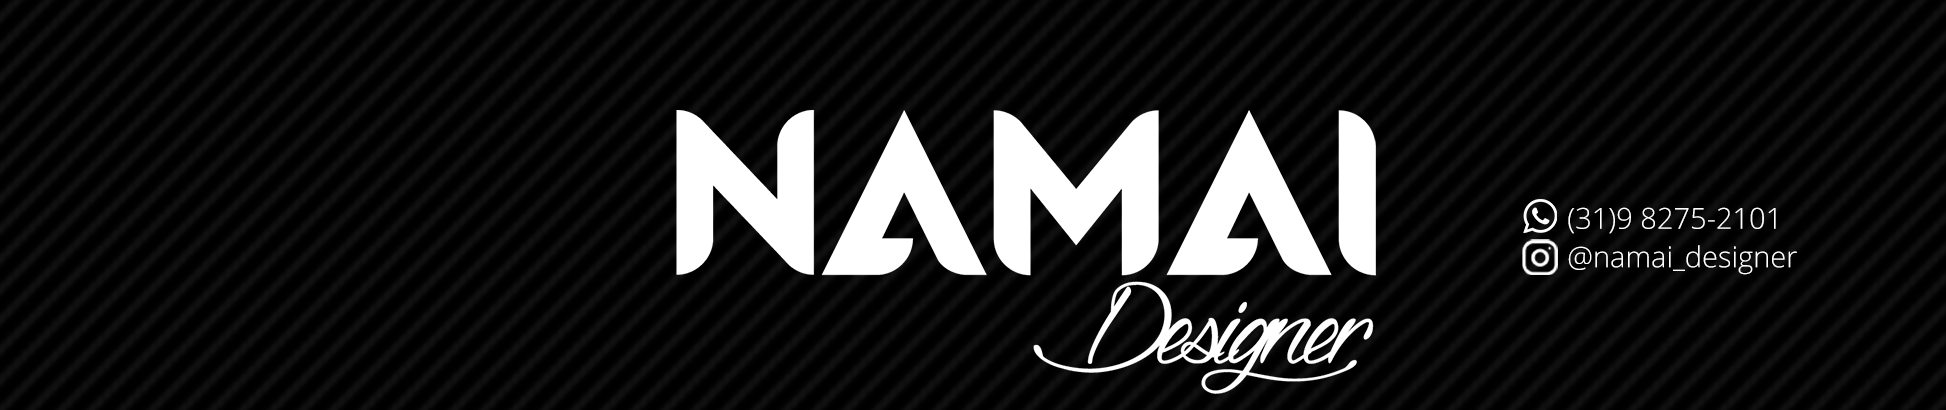 Namai Designer's profile banner